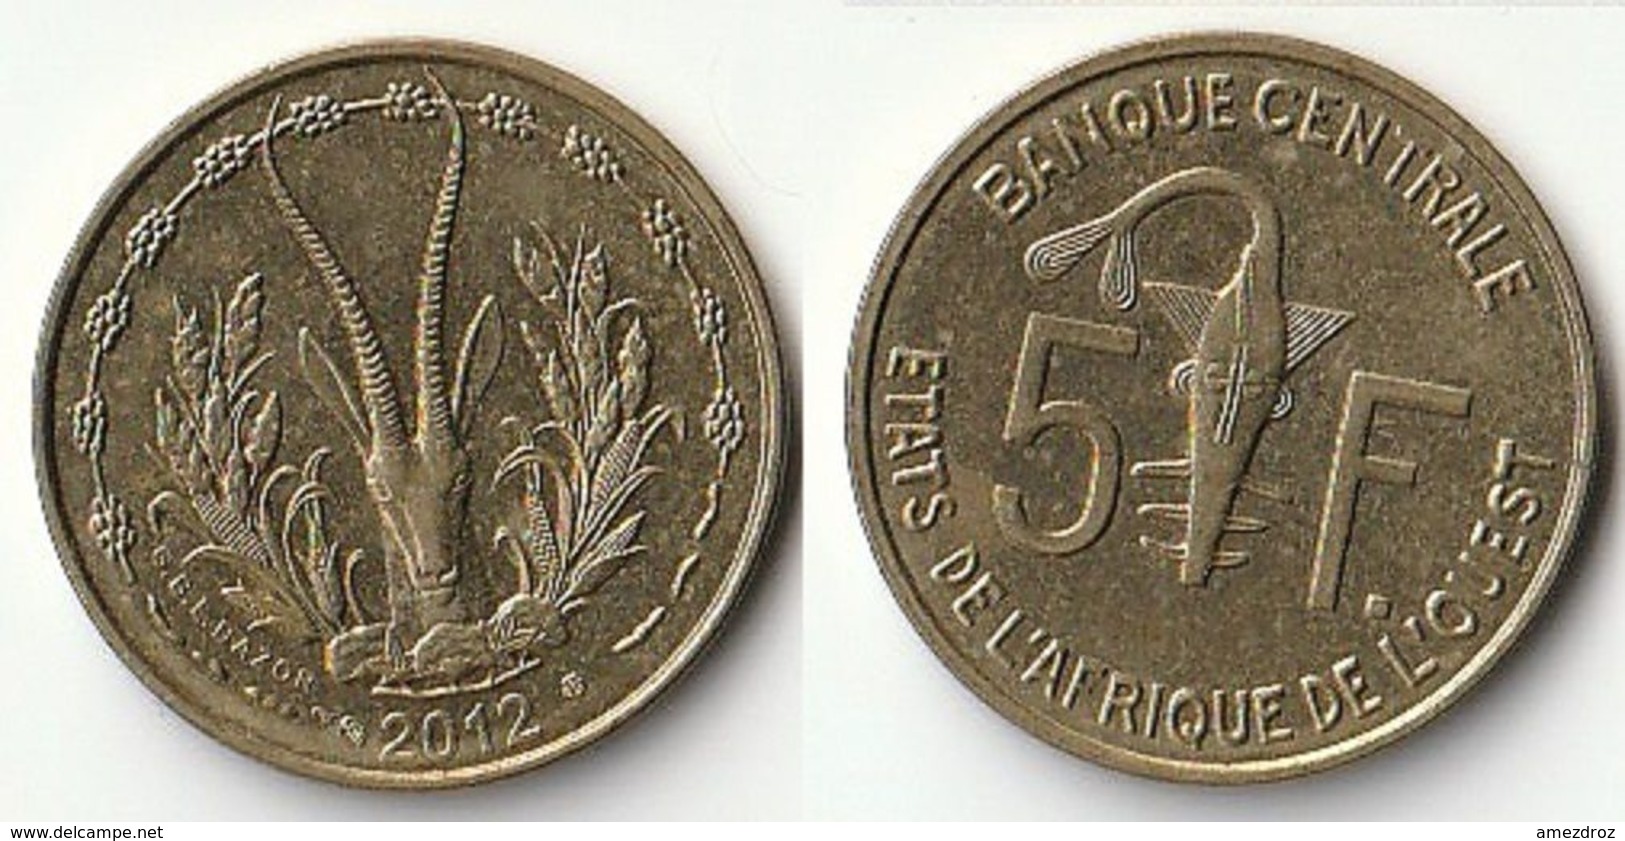 Pièce De 5 Francs CFA XOF 2012 Origine Côte D'Ivoire Afrique De L'Ouest (v) - Ivoorkust